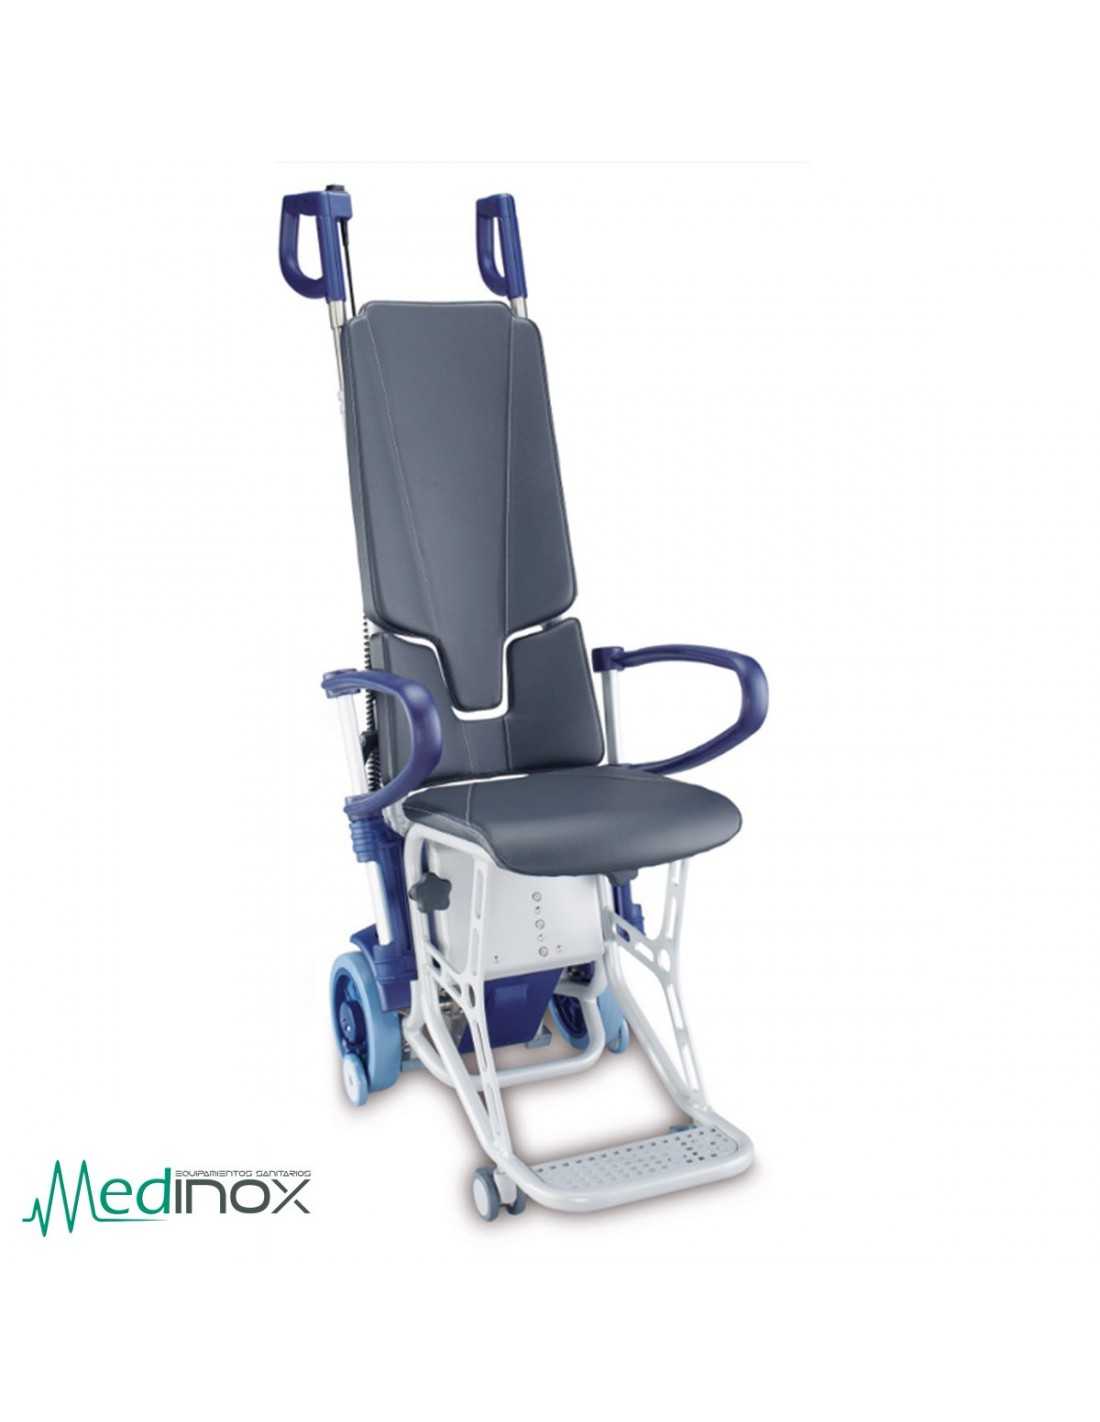 Шагающее кресло. Подъёмник для инвалидов Escalino g1201. Лестничный подъемник ступенькоход для инвалидов. Эвакуационное кресло-ступенькоход. Мобильный лестничный подъемник ступенькоход.